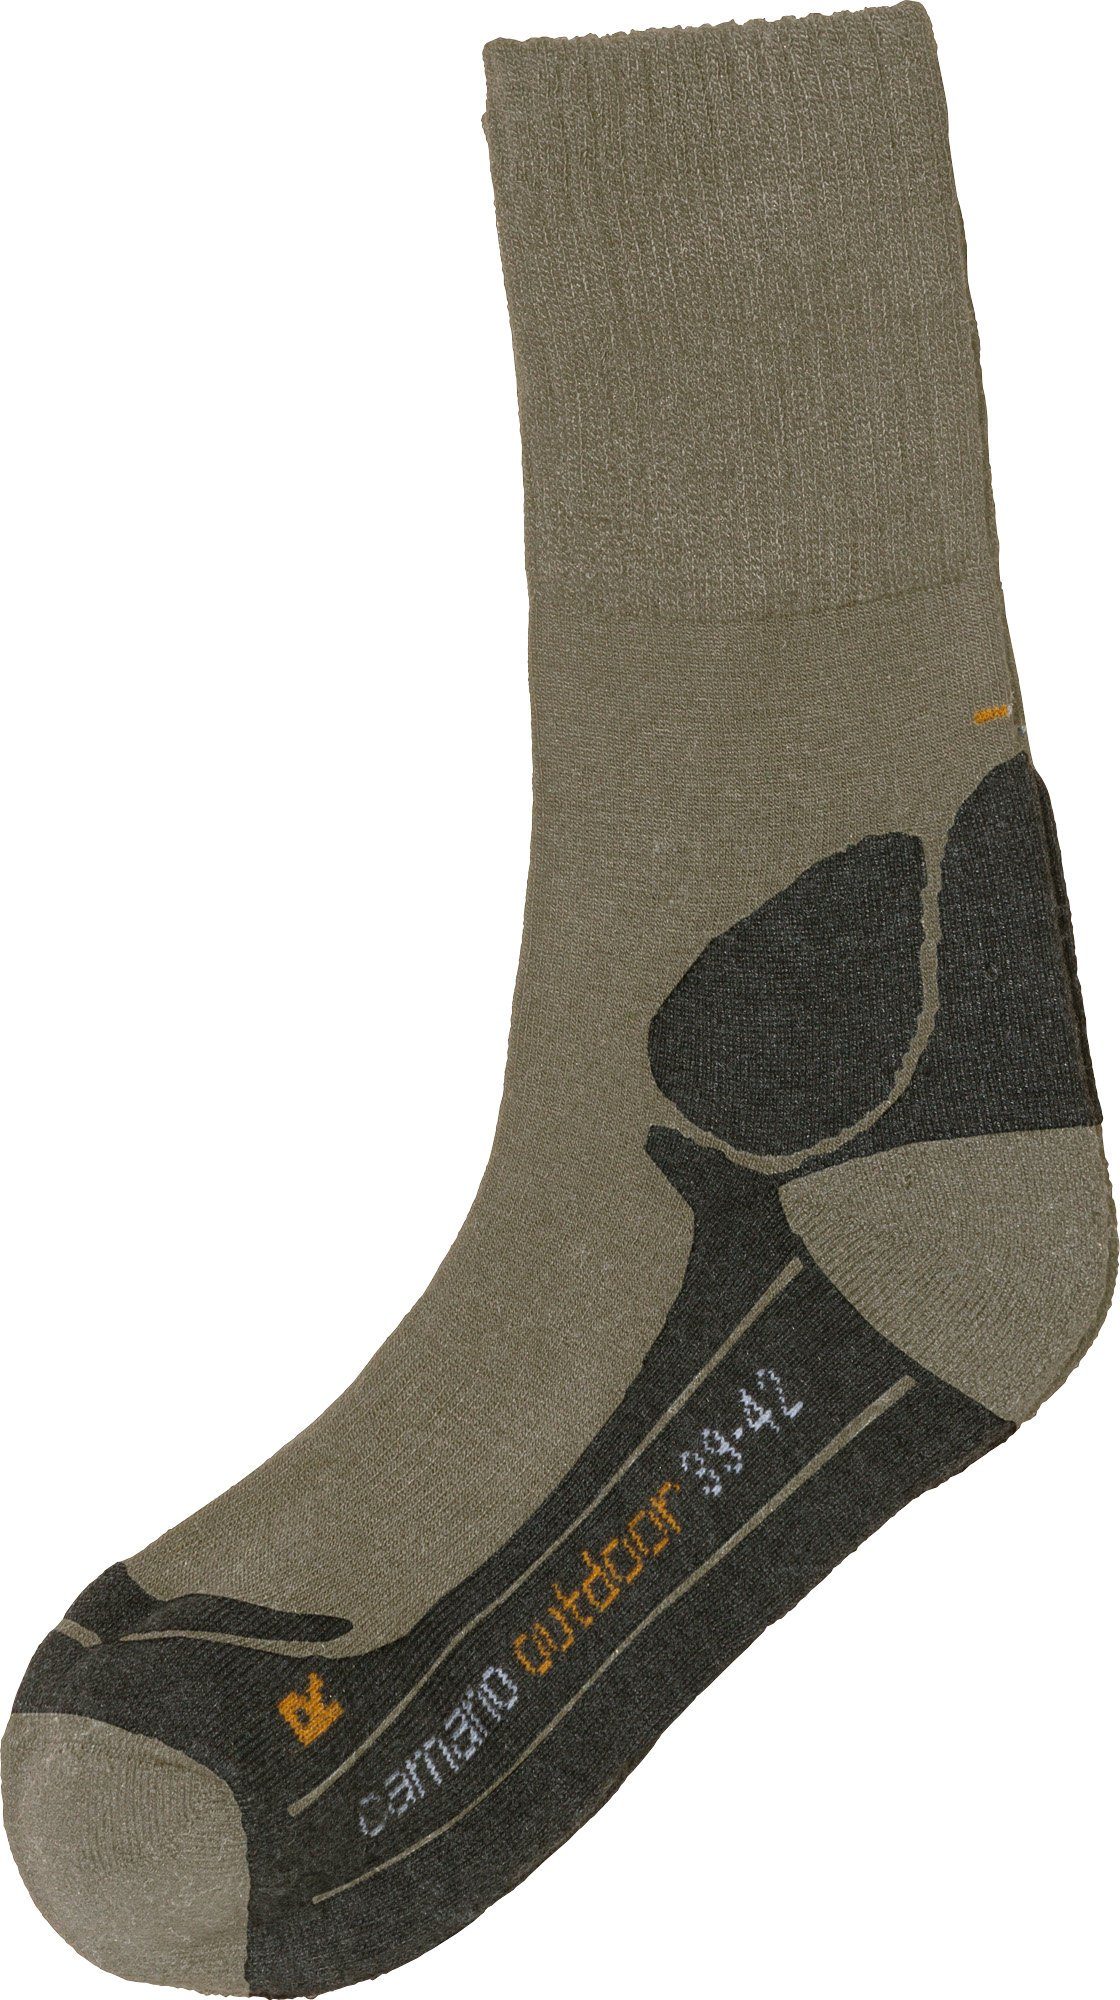 Paar Socken Camano Unisex-Outdoor-Socken Uni hellbraun 1